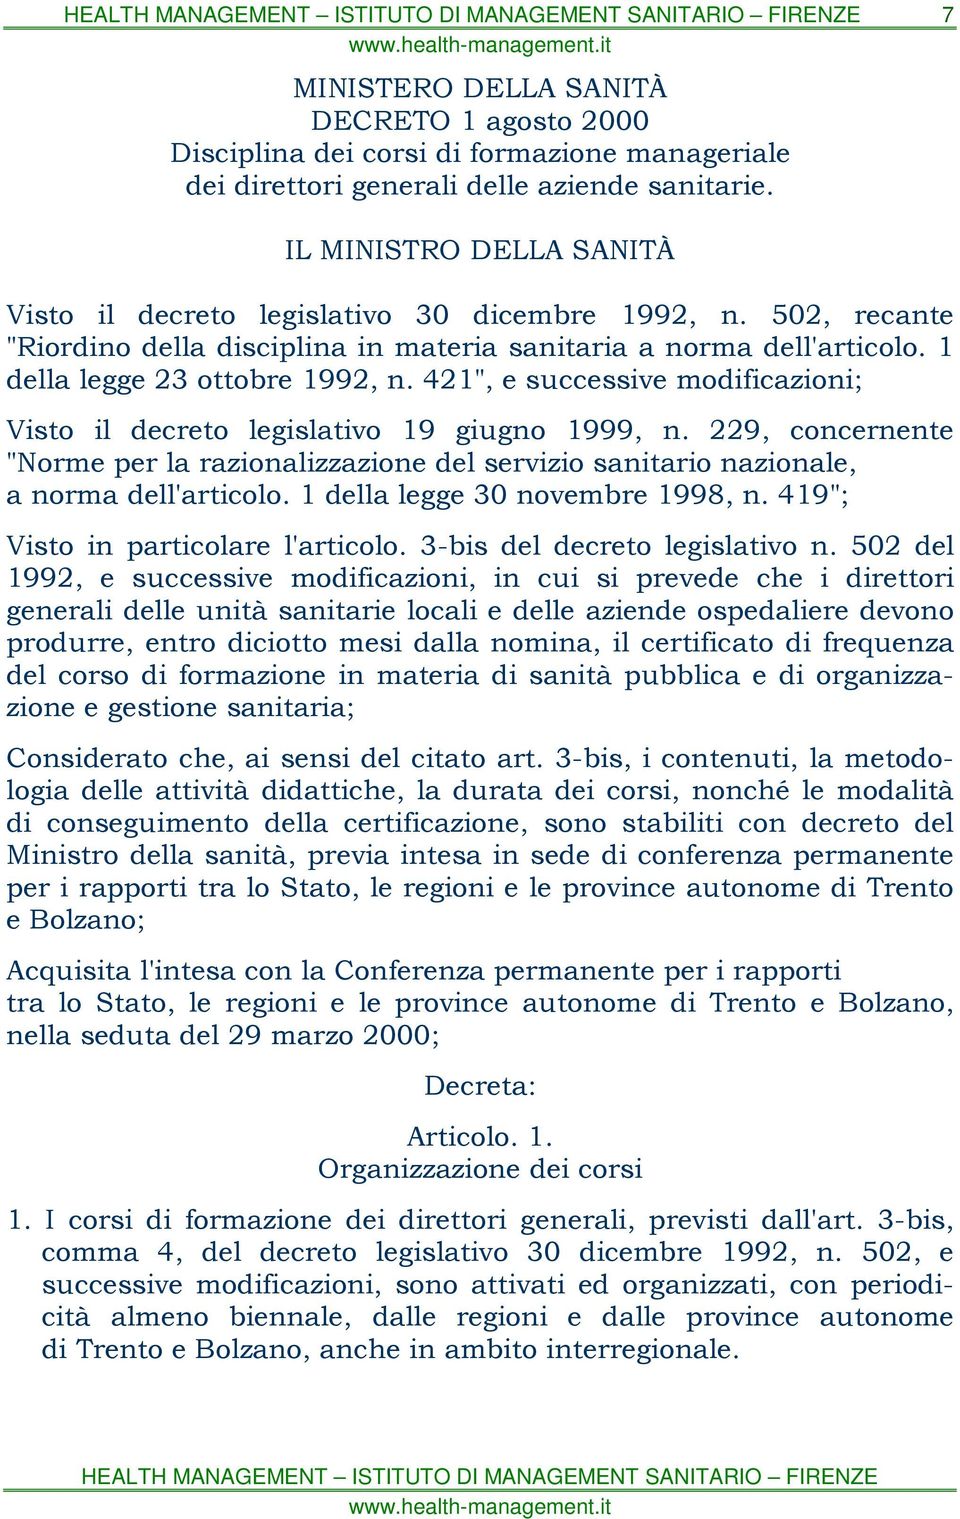 421", e successive modificazioni; Visto il decreto legislativo 19 giugno 1999, n. 229, concernente "Norme per la razionalizzazione del servizio sanitario nazionale, a norma dell'articolo.